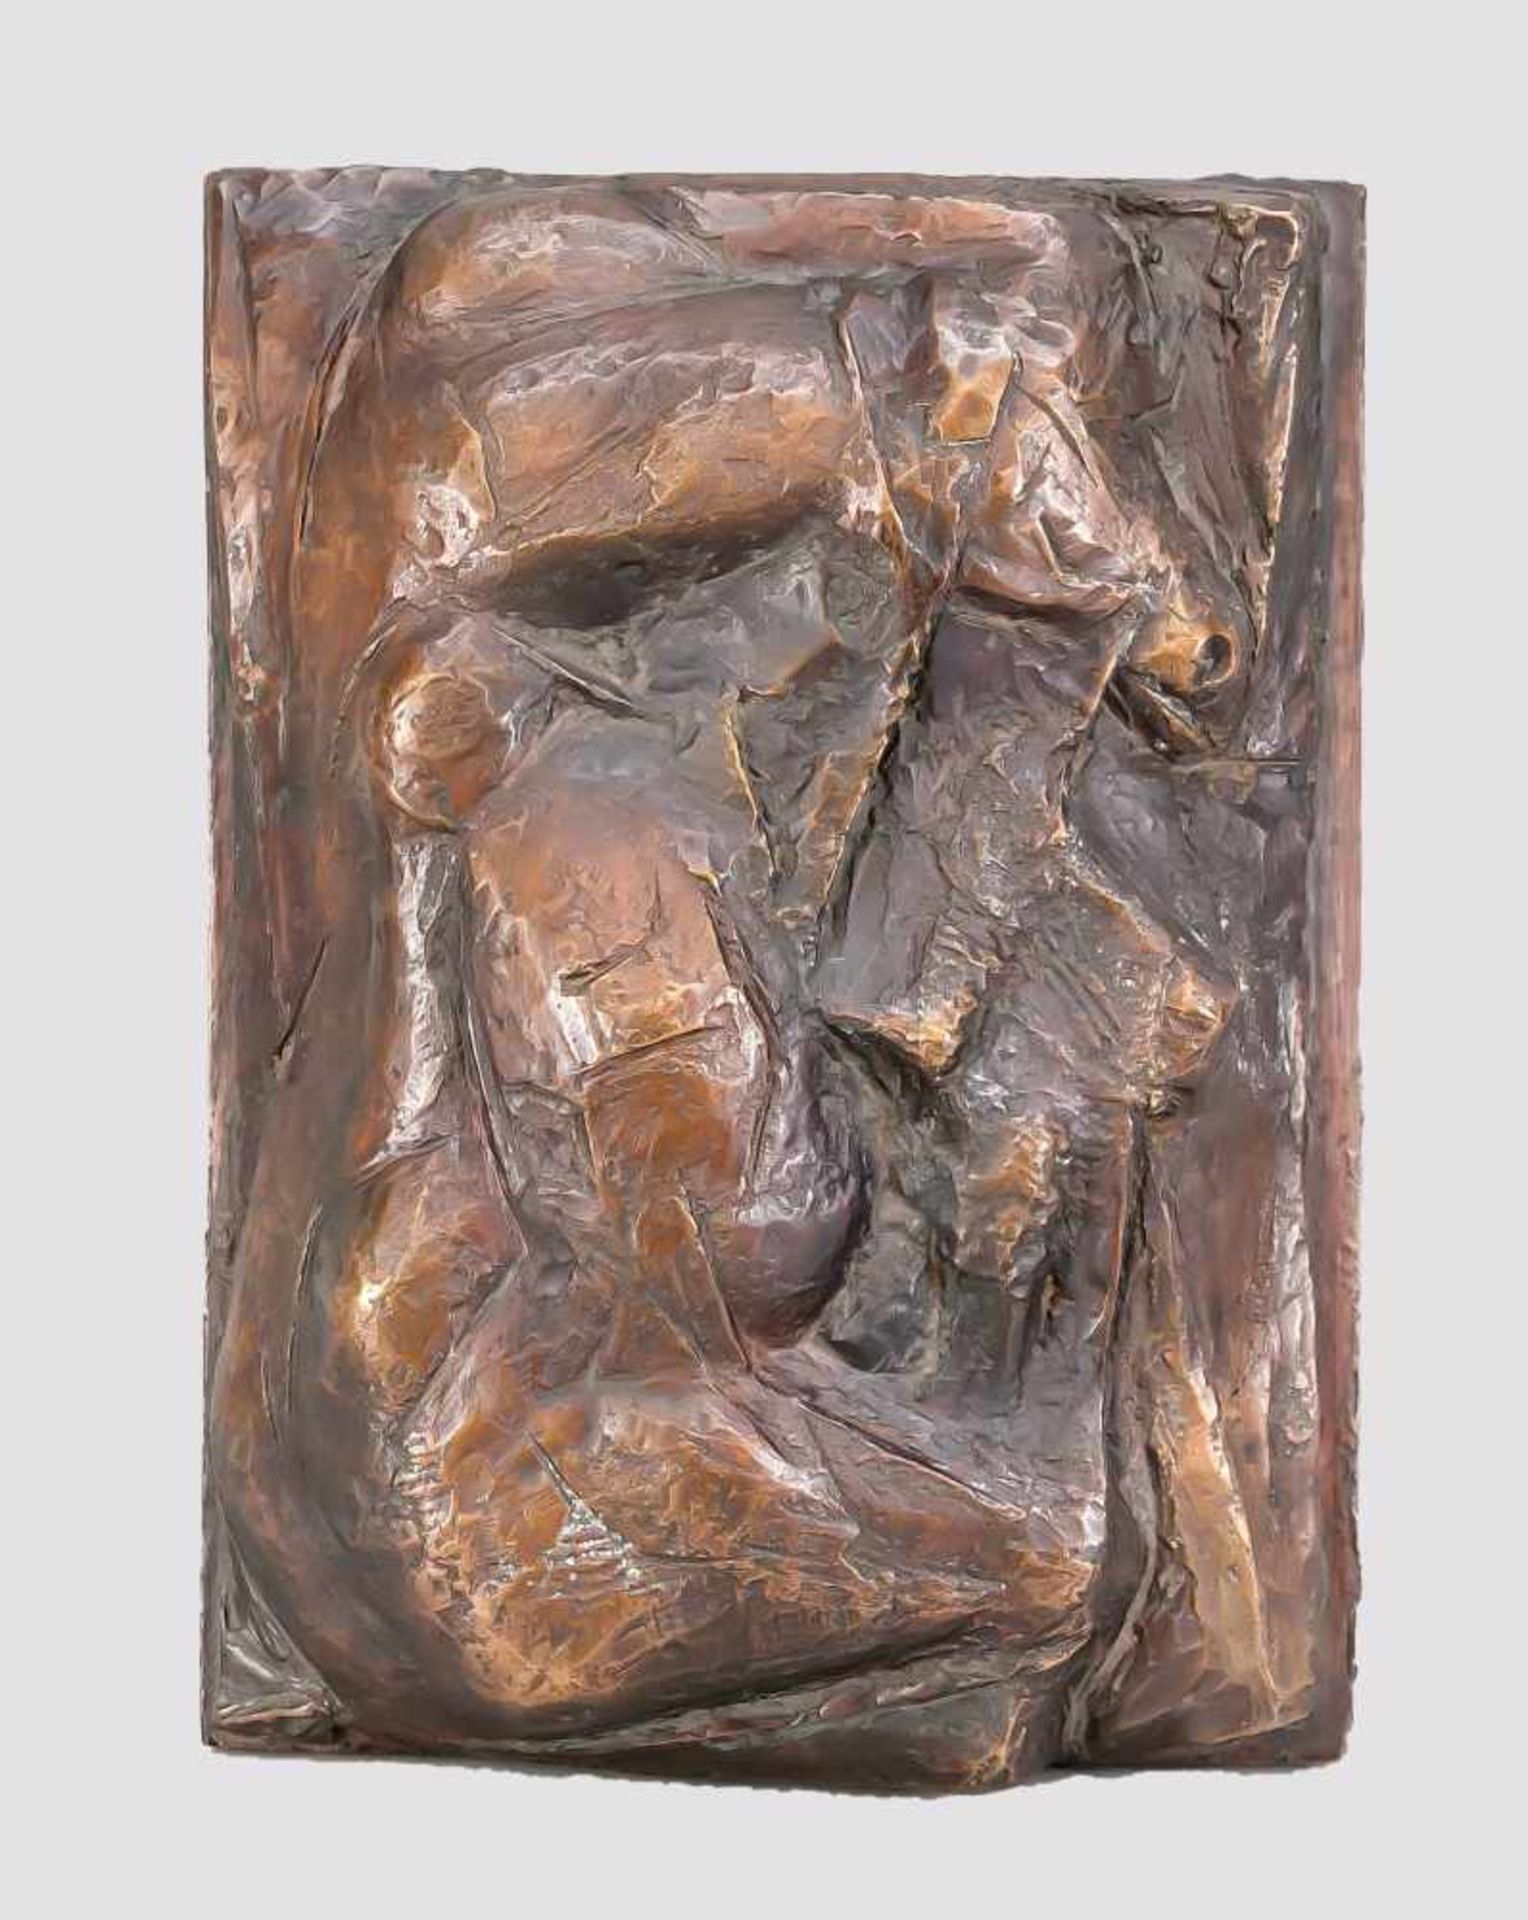 Rolf Kuhrt (*1936) (attrib), "Das Fohlen", Relief, patinierte Bronze, seitlichmonogrammiert "K",